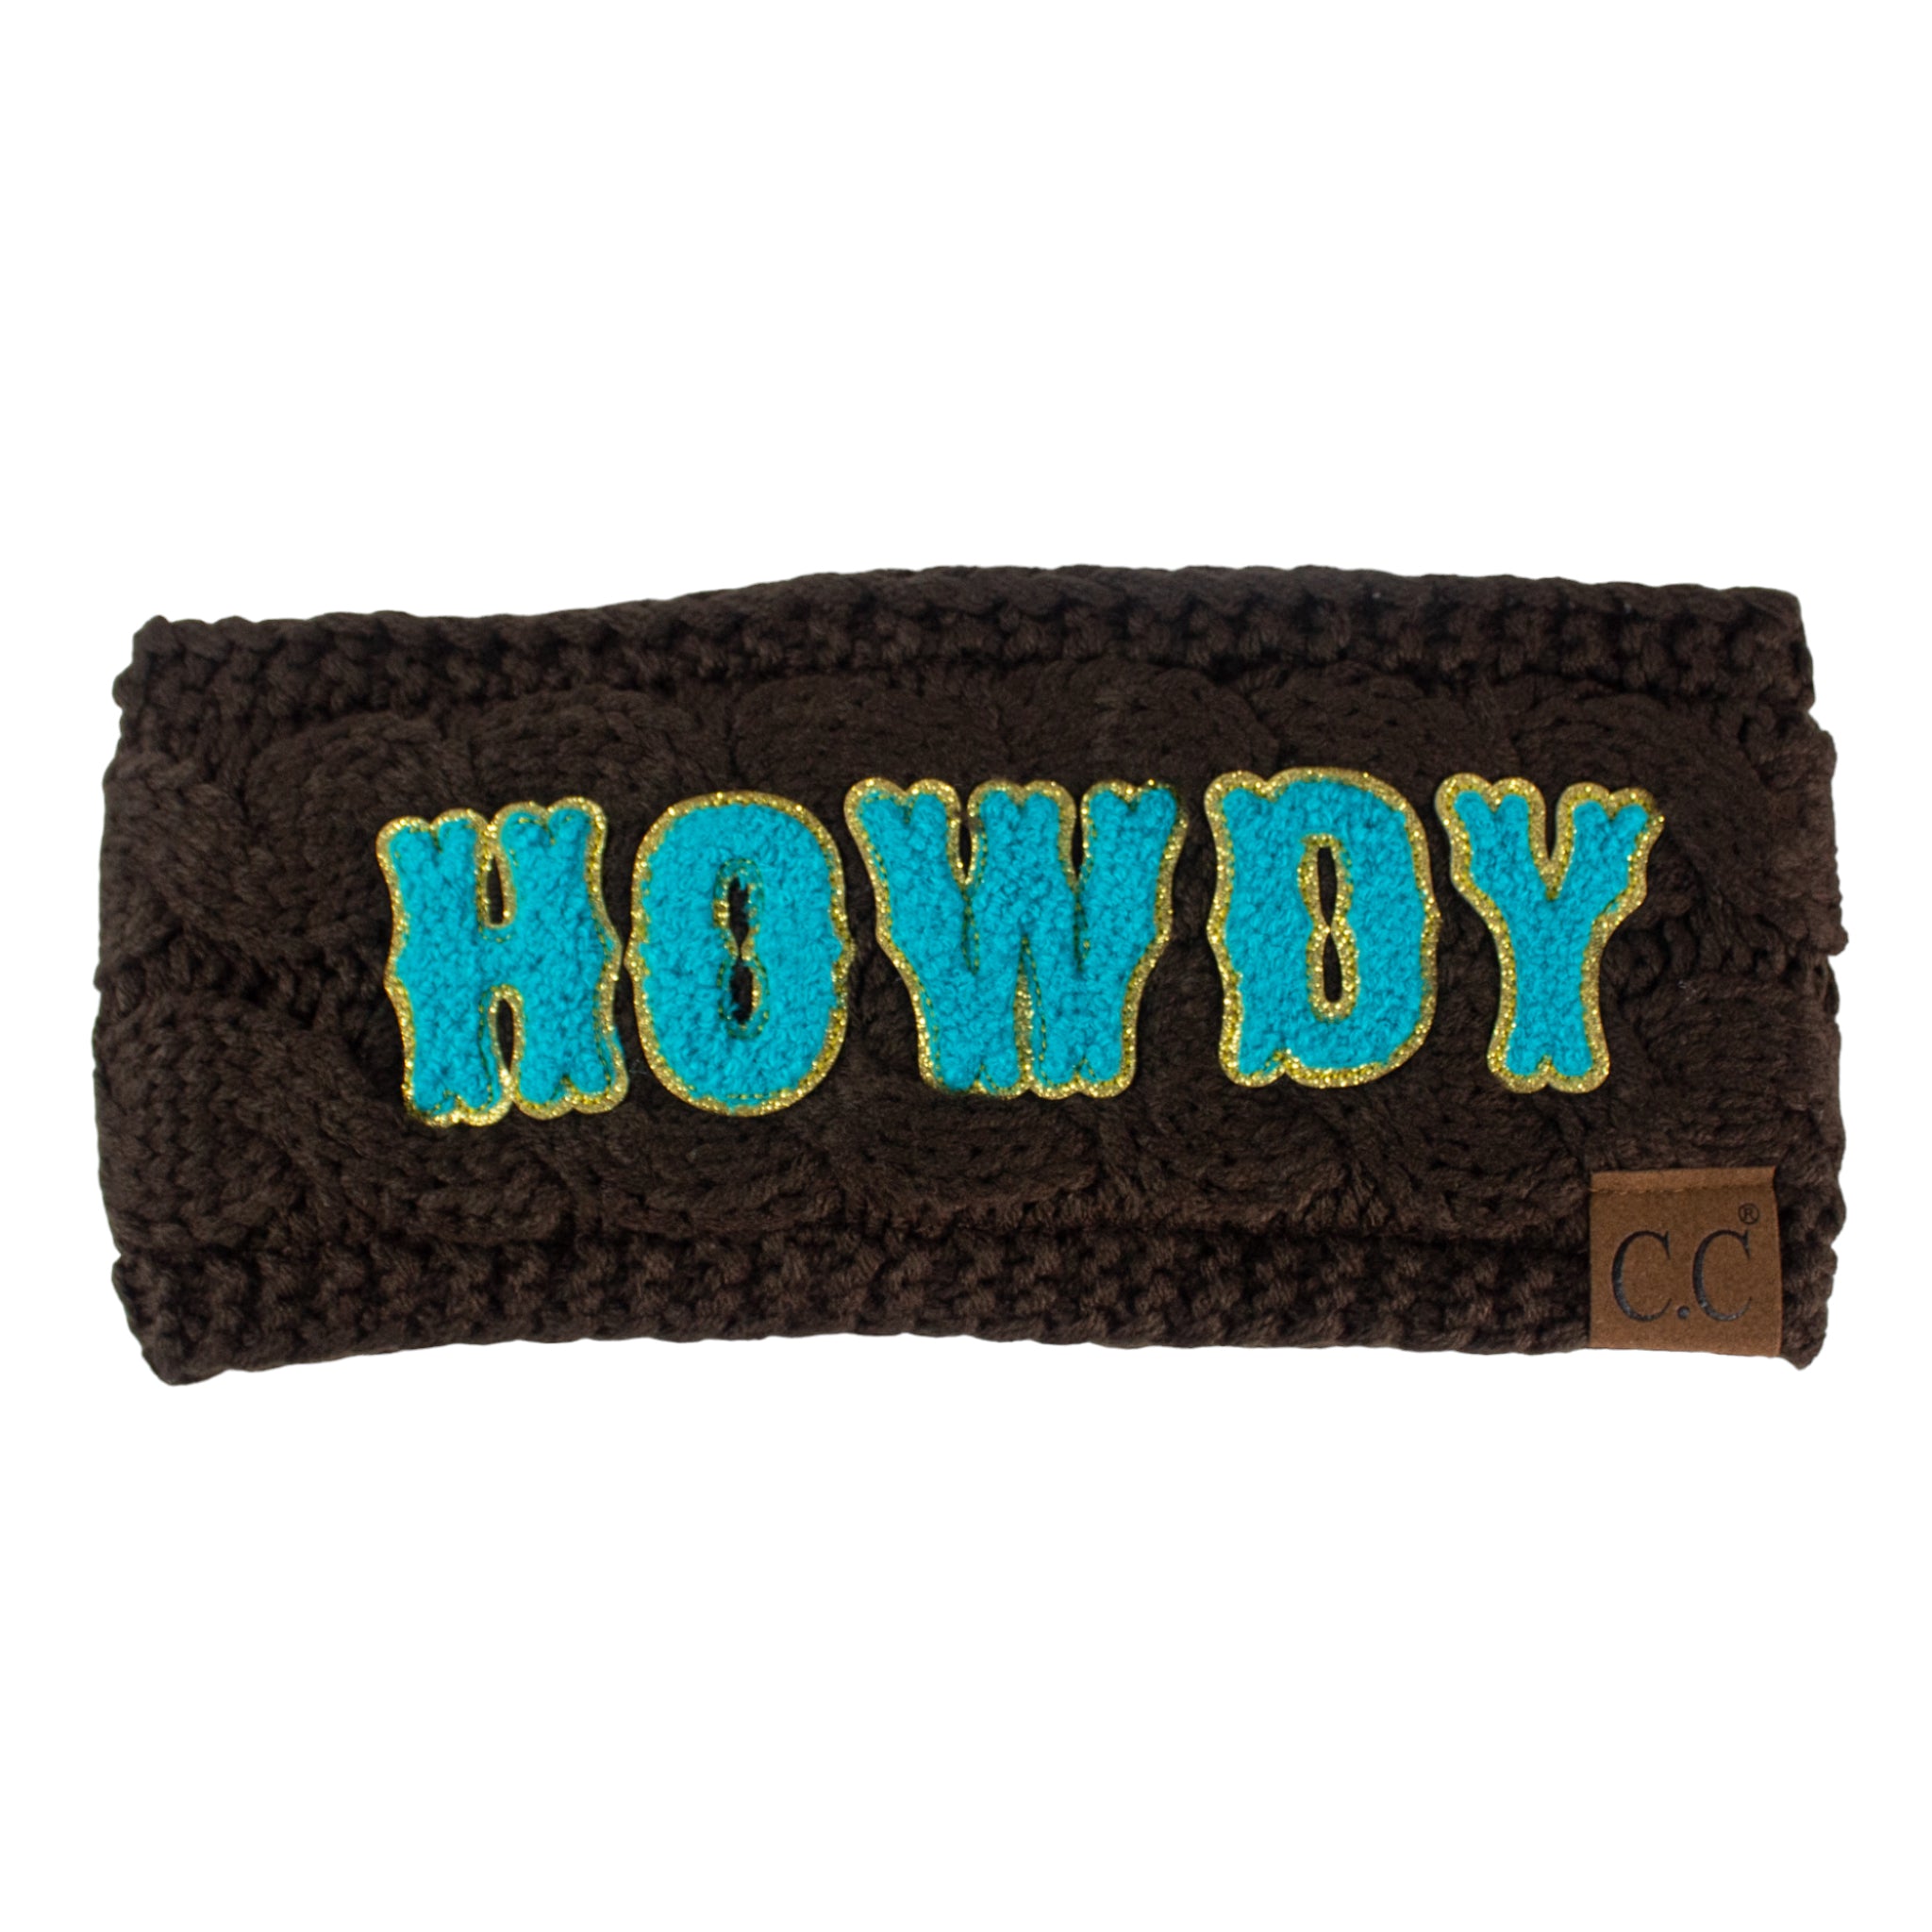 BJ-HWE-0037 Howdy Brown Headwrap